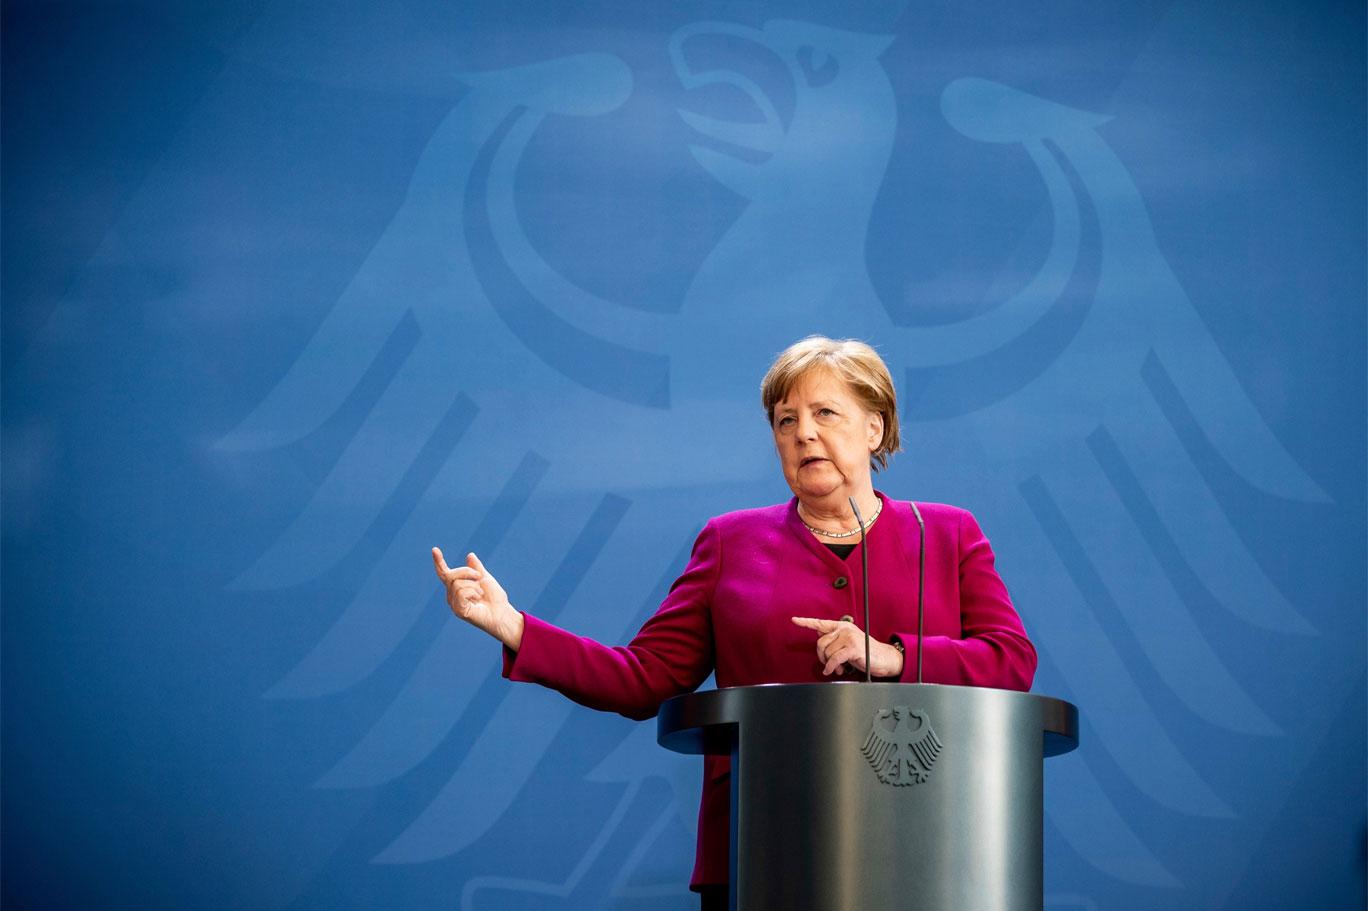 Merkel, ABD'deki kongre baskını hakkında konuştu: Görüntüler beni kızdırdı ve üzdü